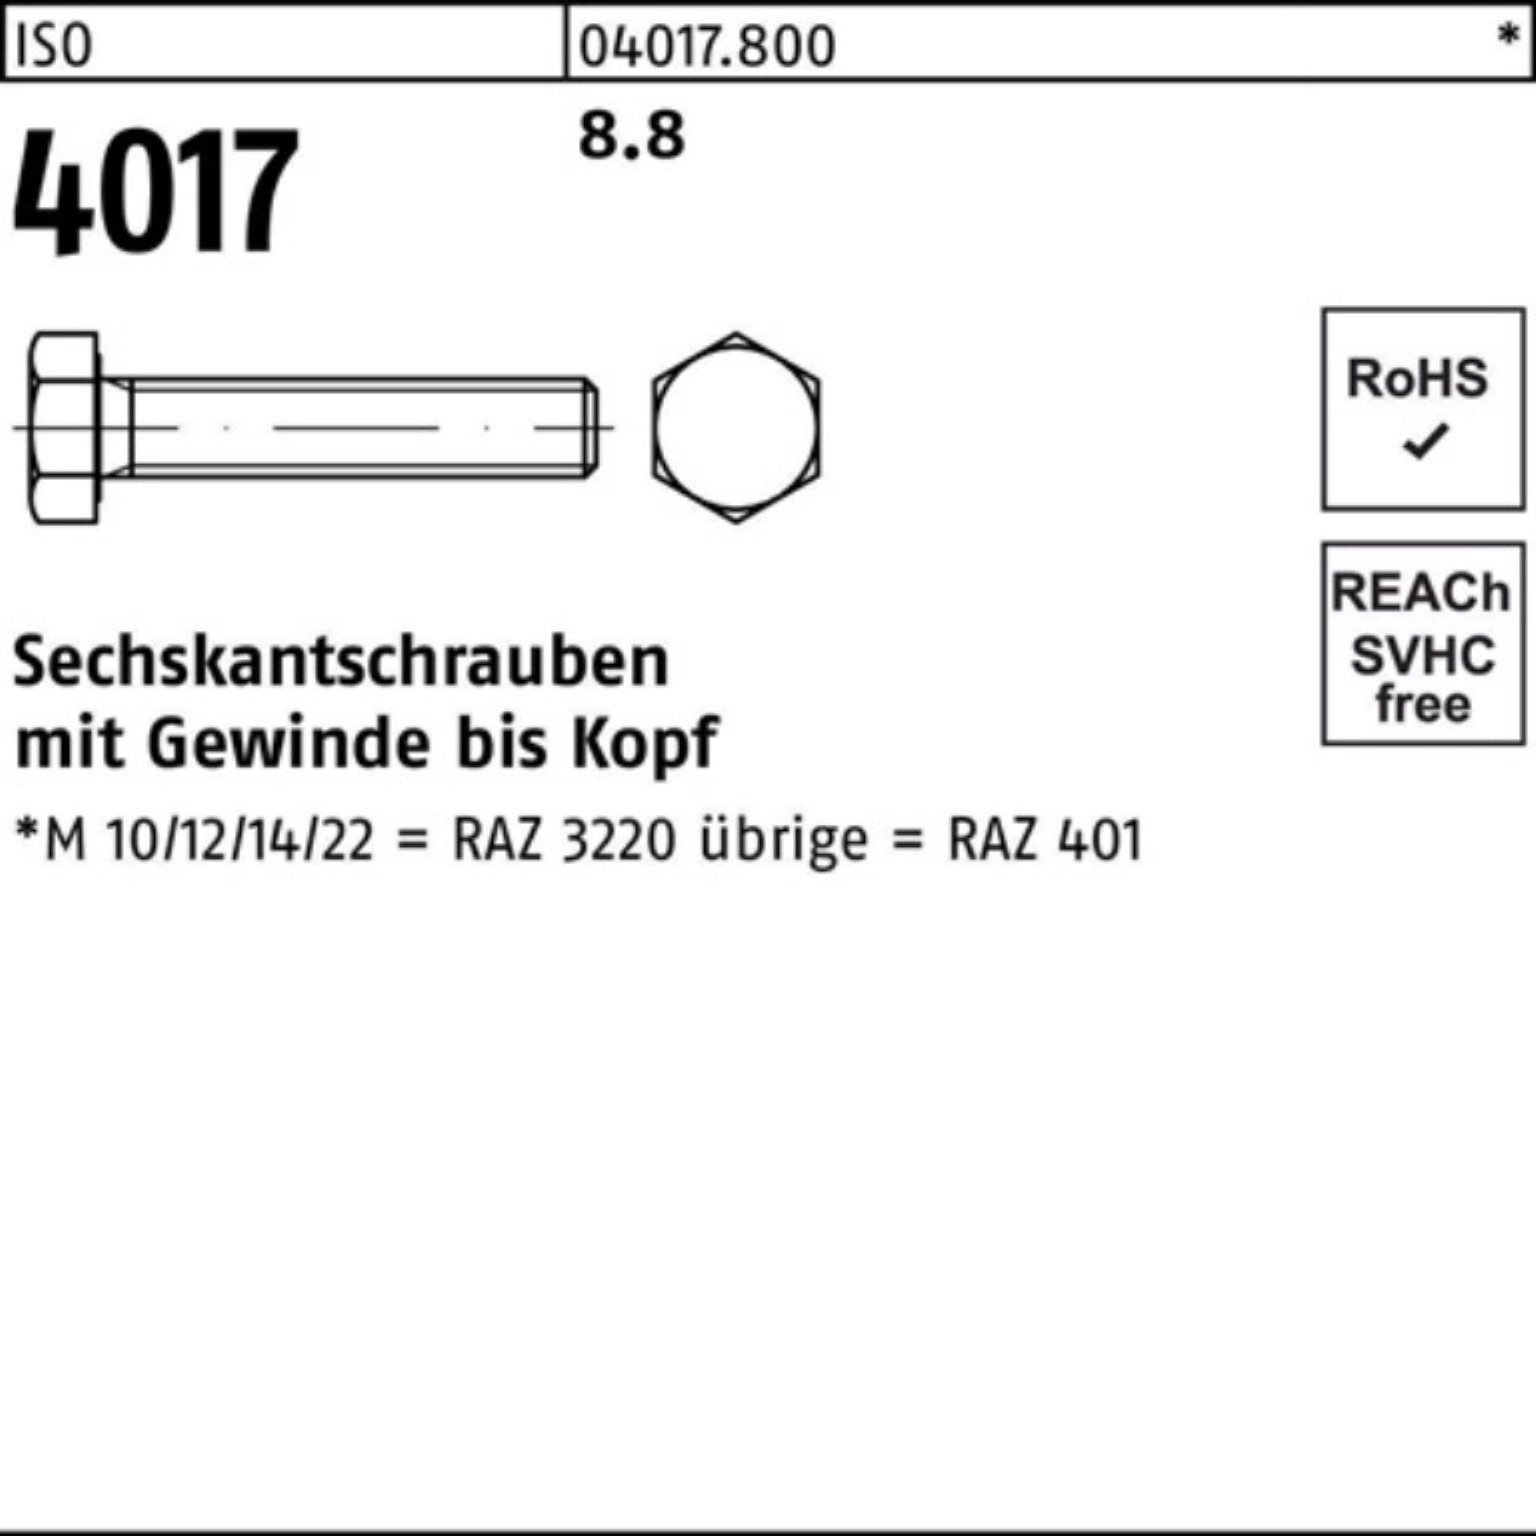 [Super günstig ☆ Auf 8 Tage begrenzt] Bufab Sechskantschraube 100er Pack Sechskantschraube 40 4017 M10x 8.8 Stück VG 50 220 ISO ISO